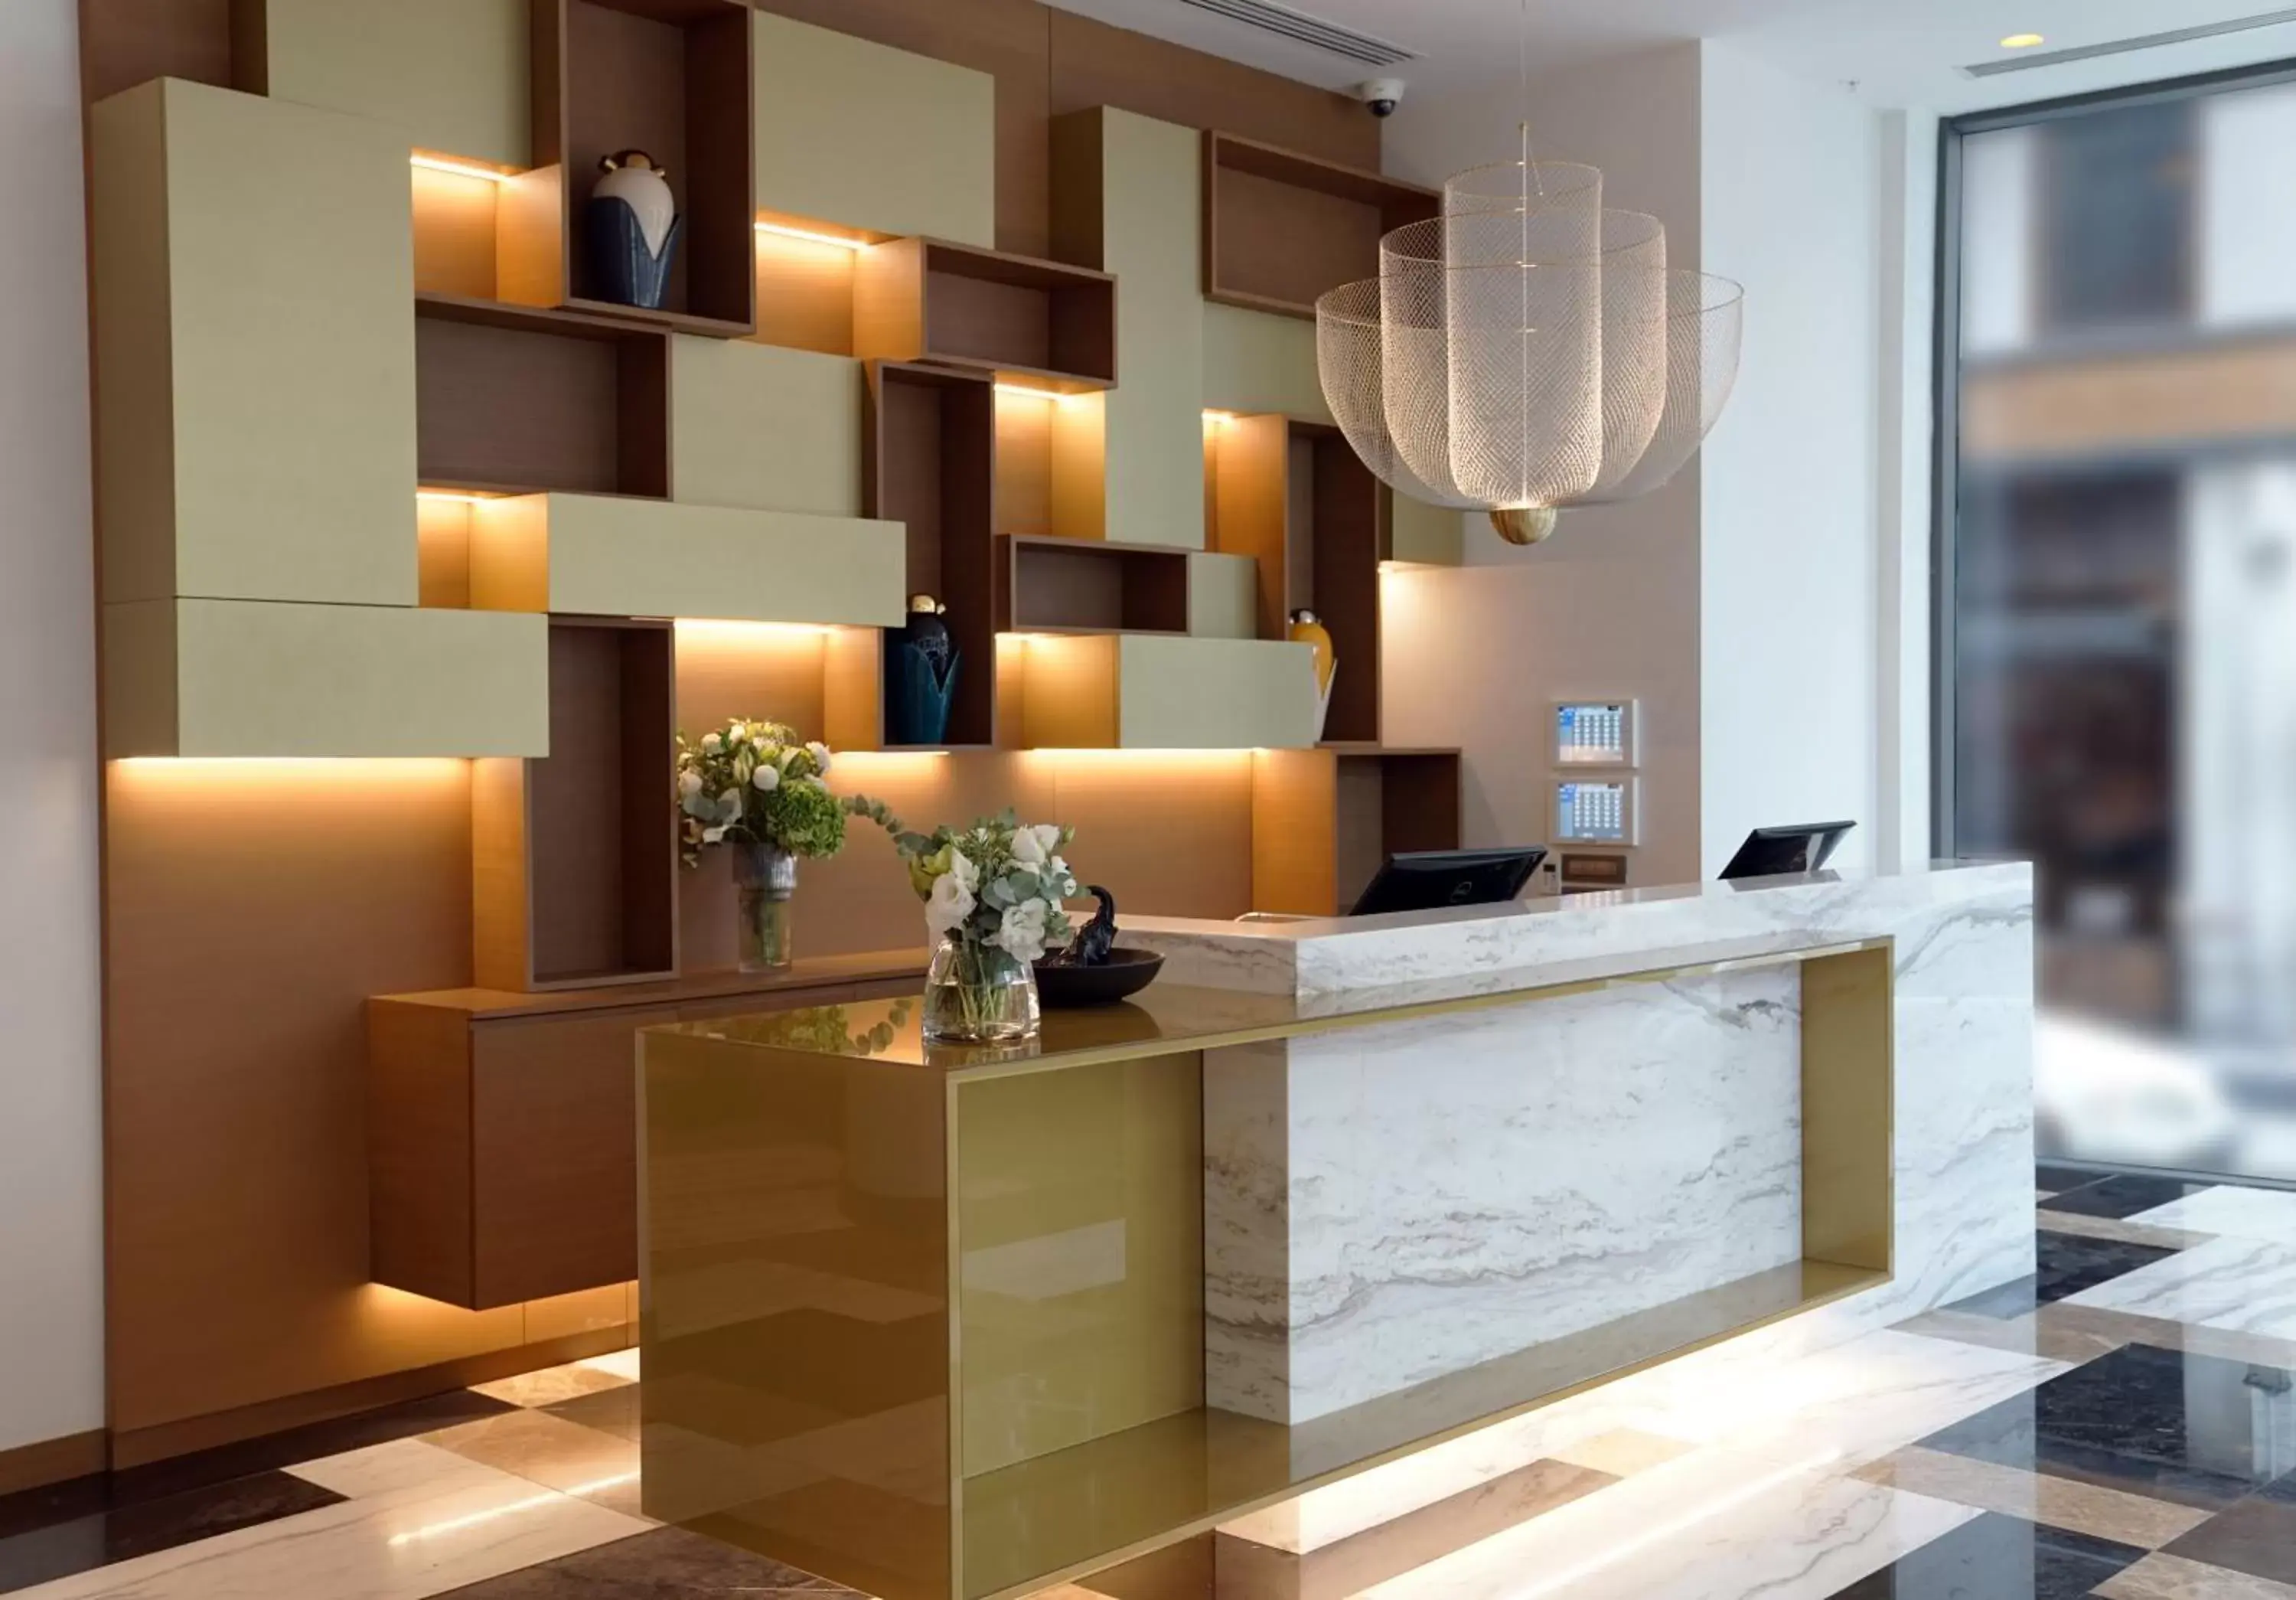 Lobby or reception, Lobby/Reception in Galata's Hotel